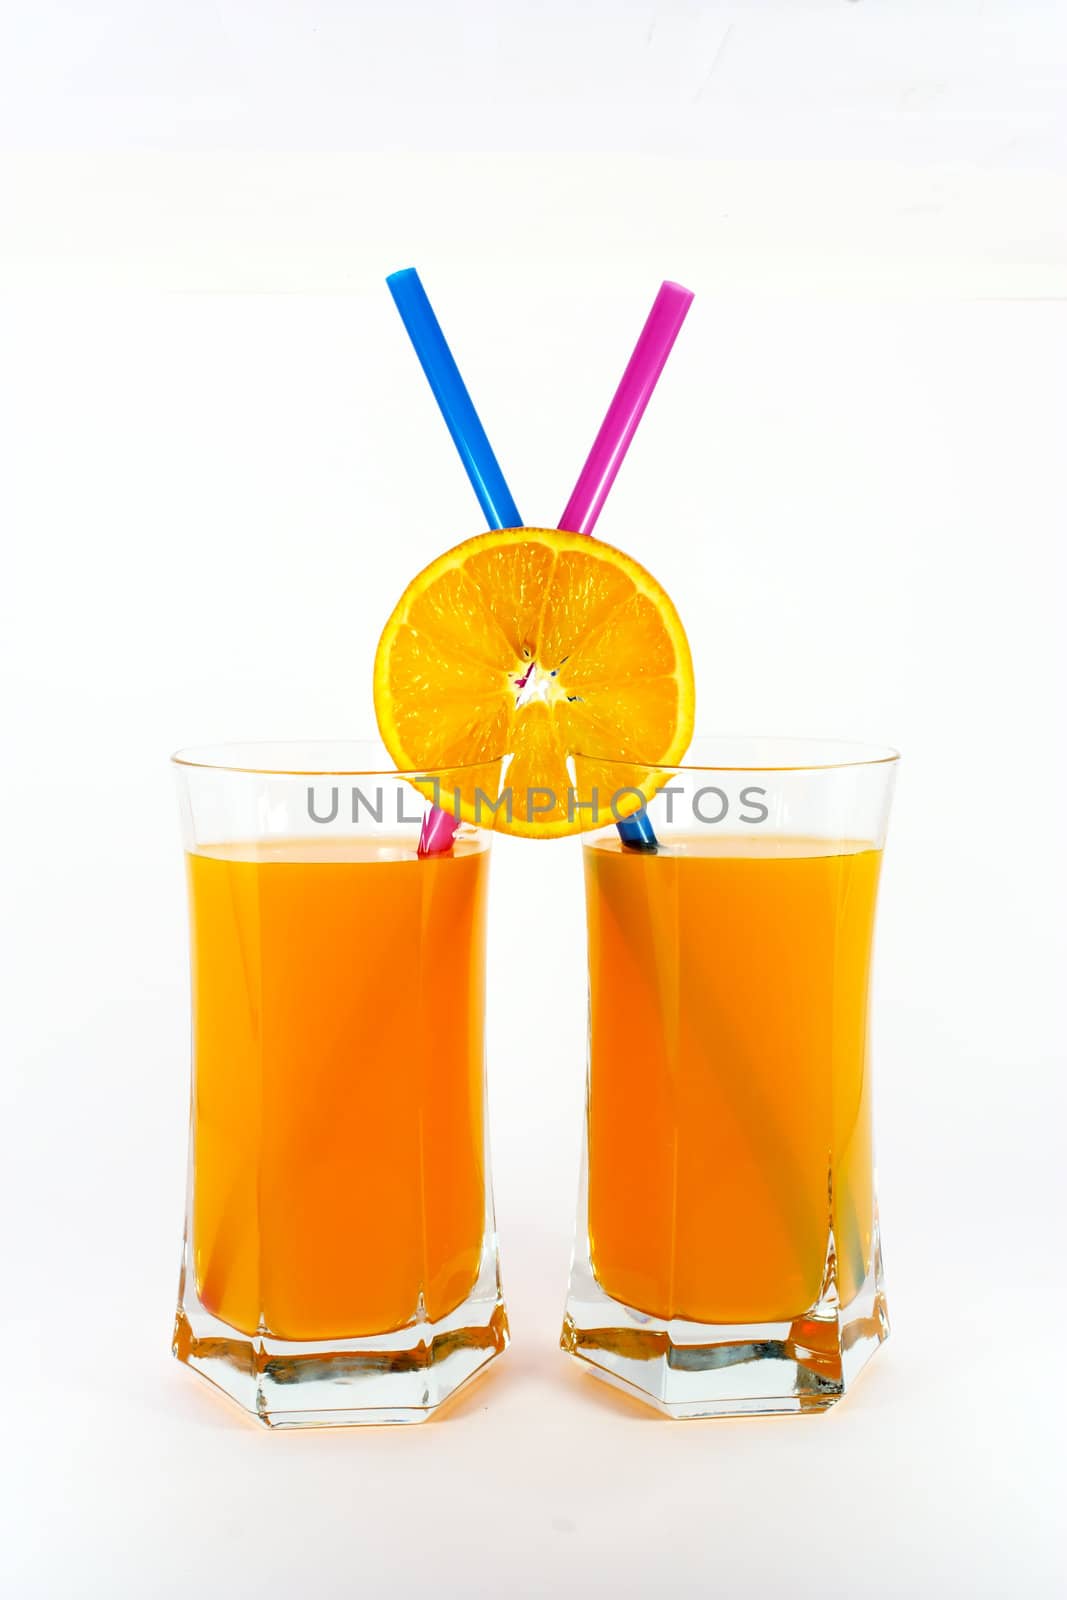 Two glasses of fresh orange juice isolated on white